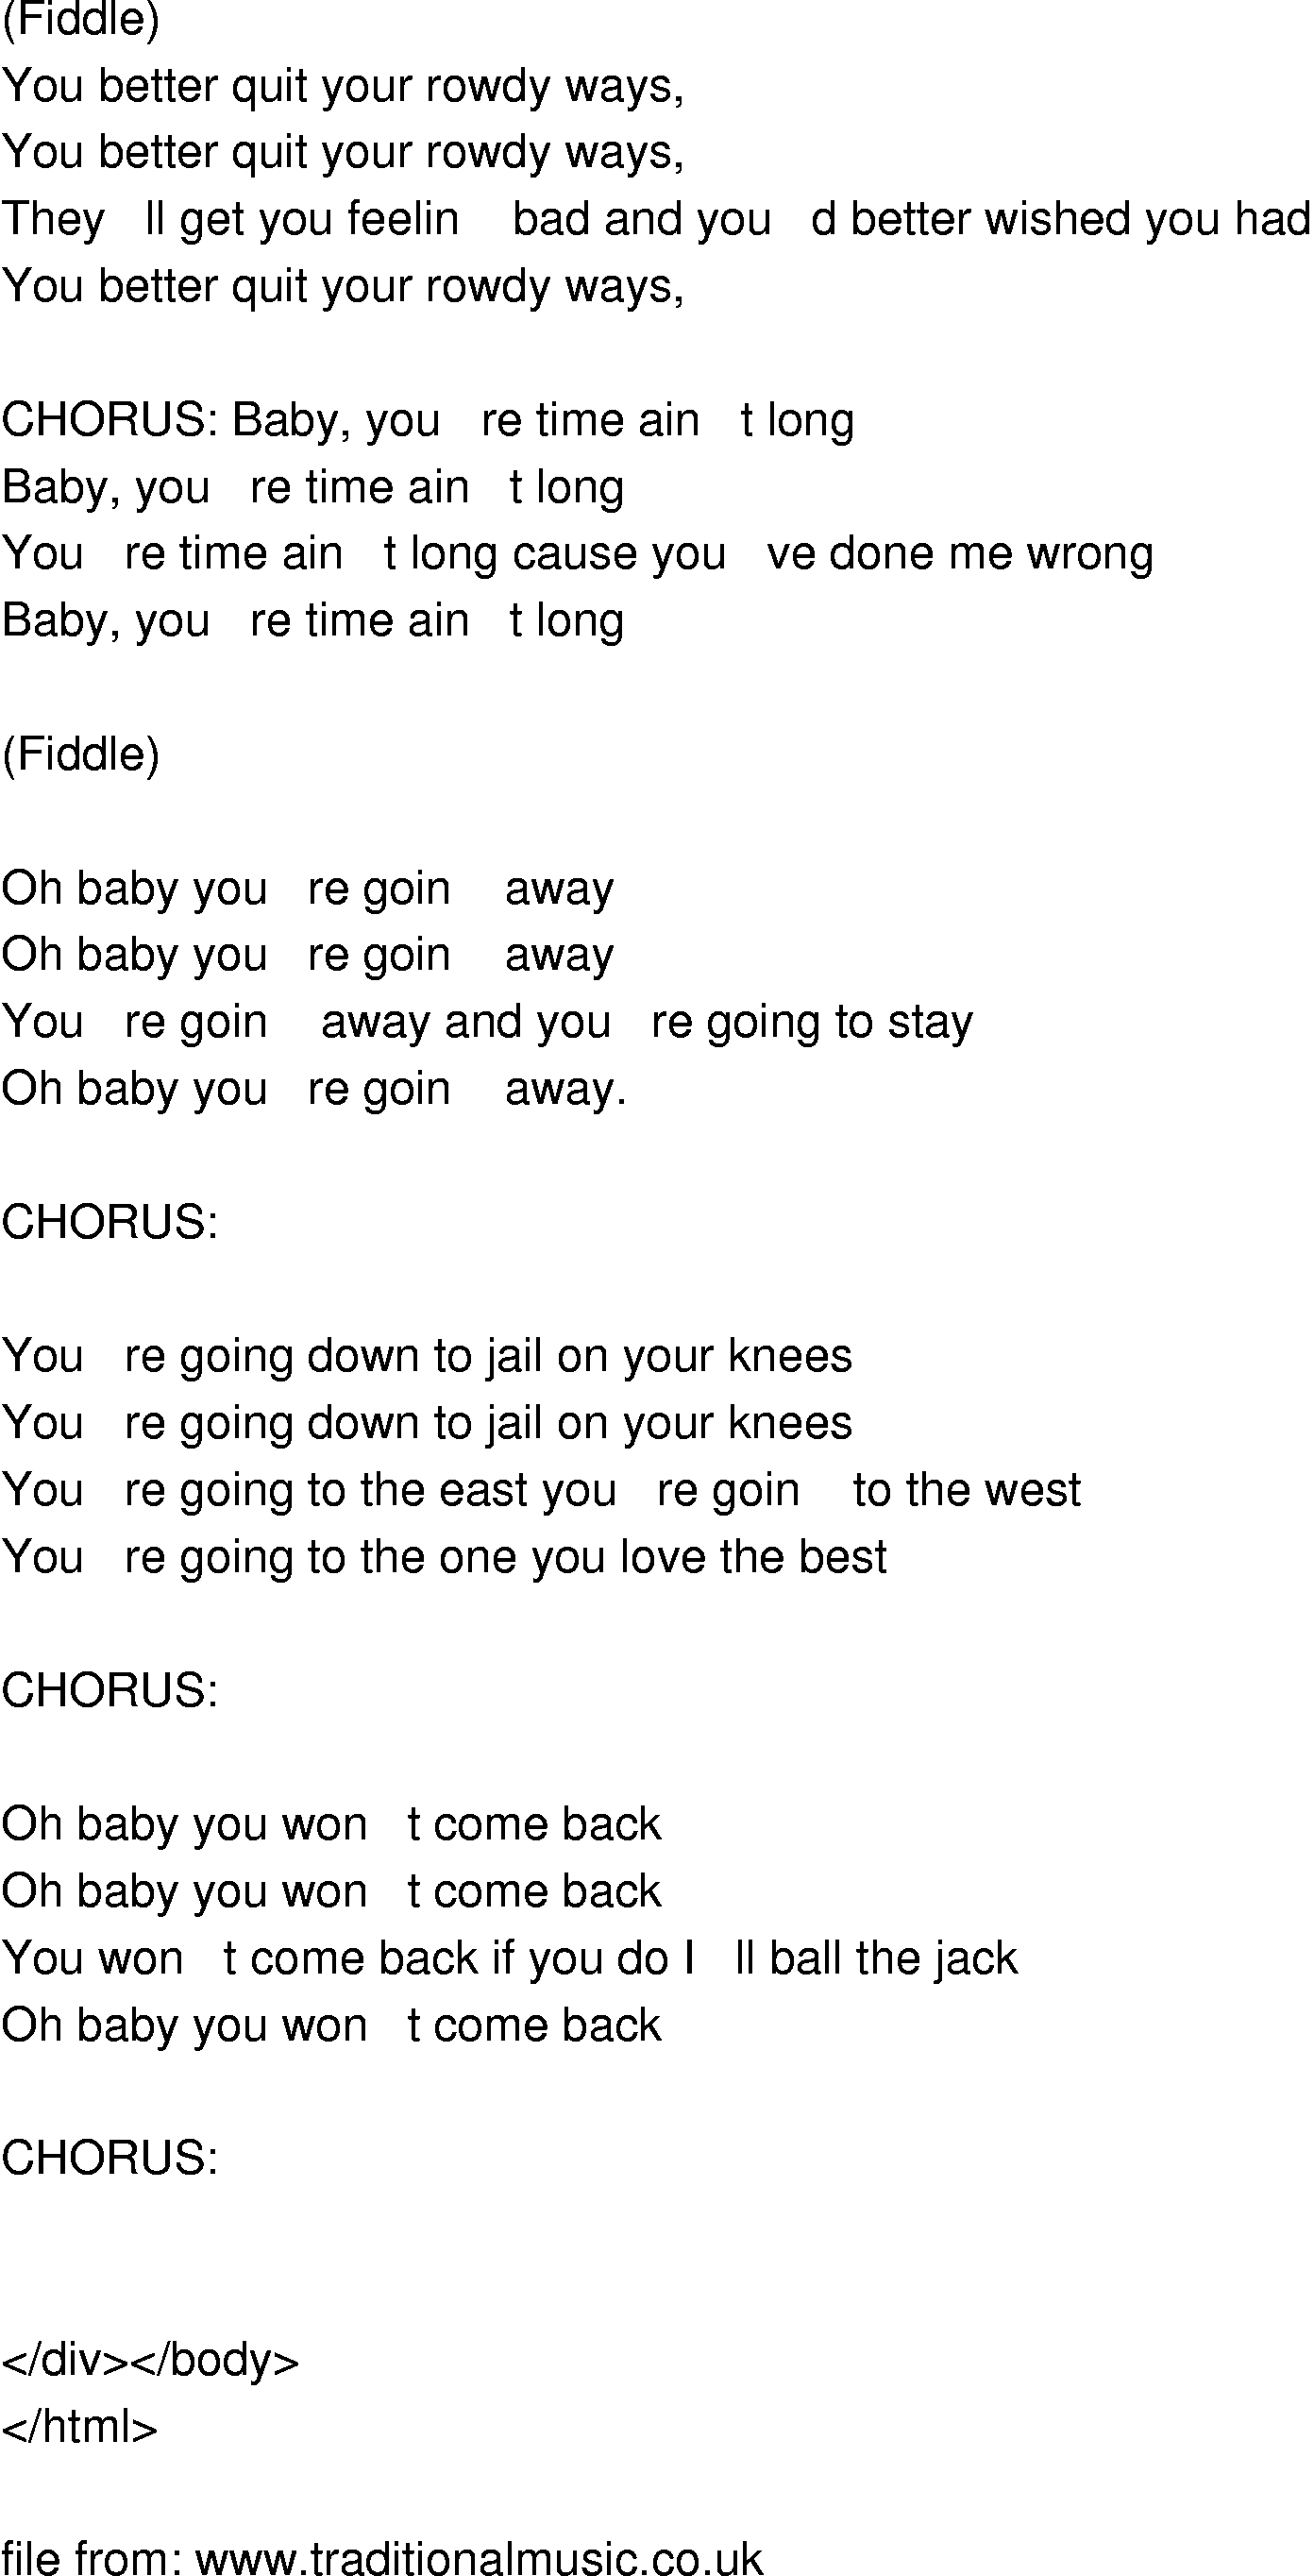 Rowdy baby lyrics in english